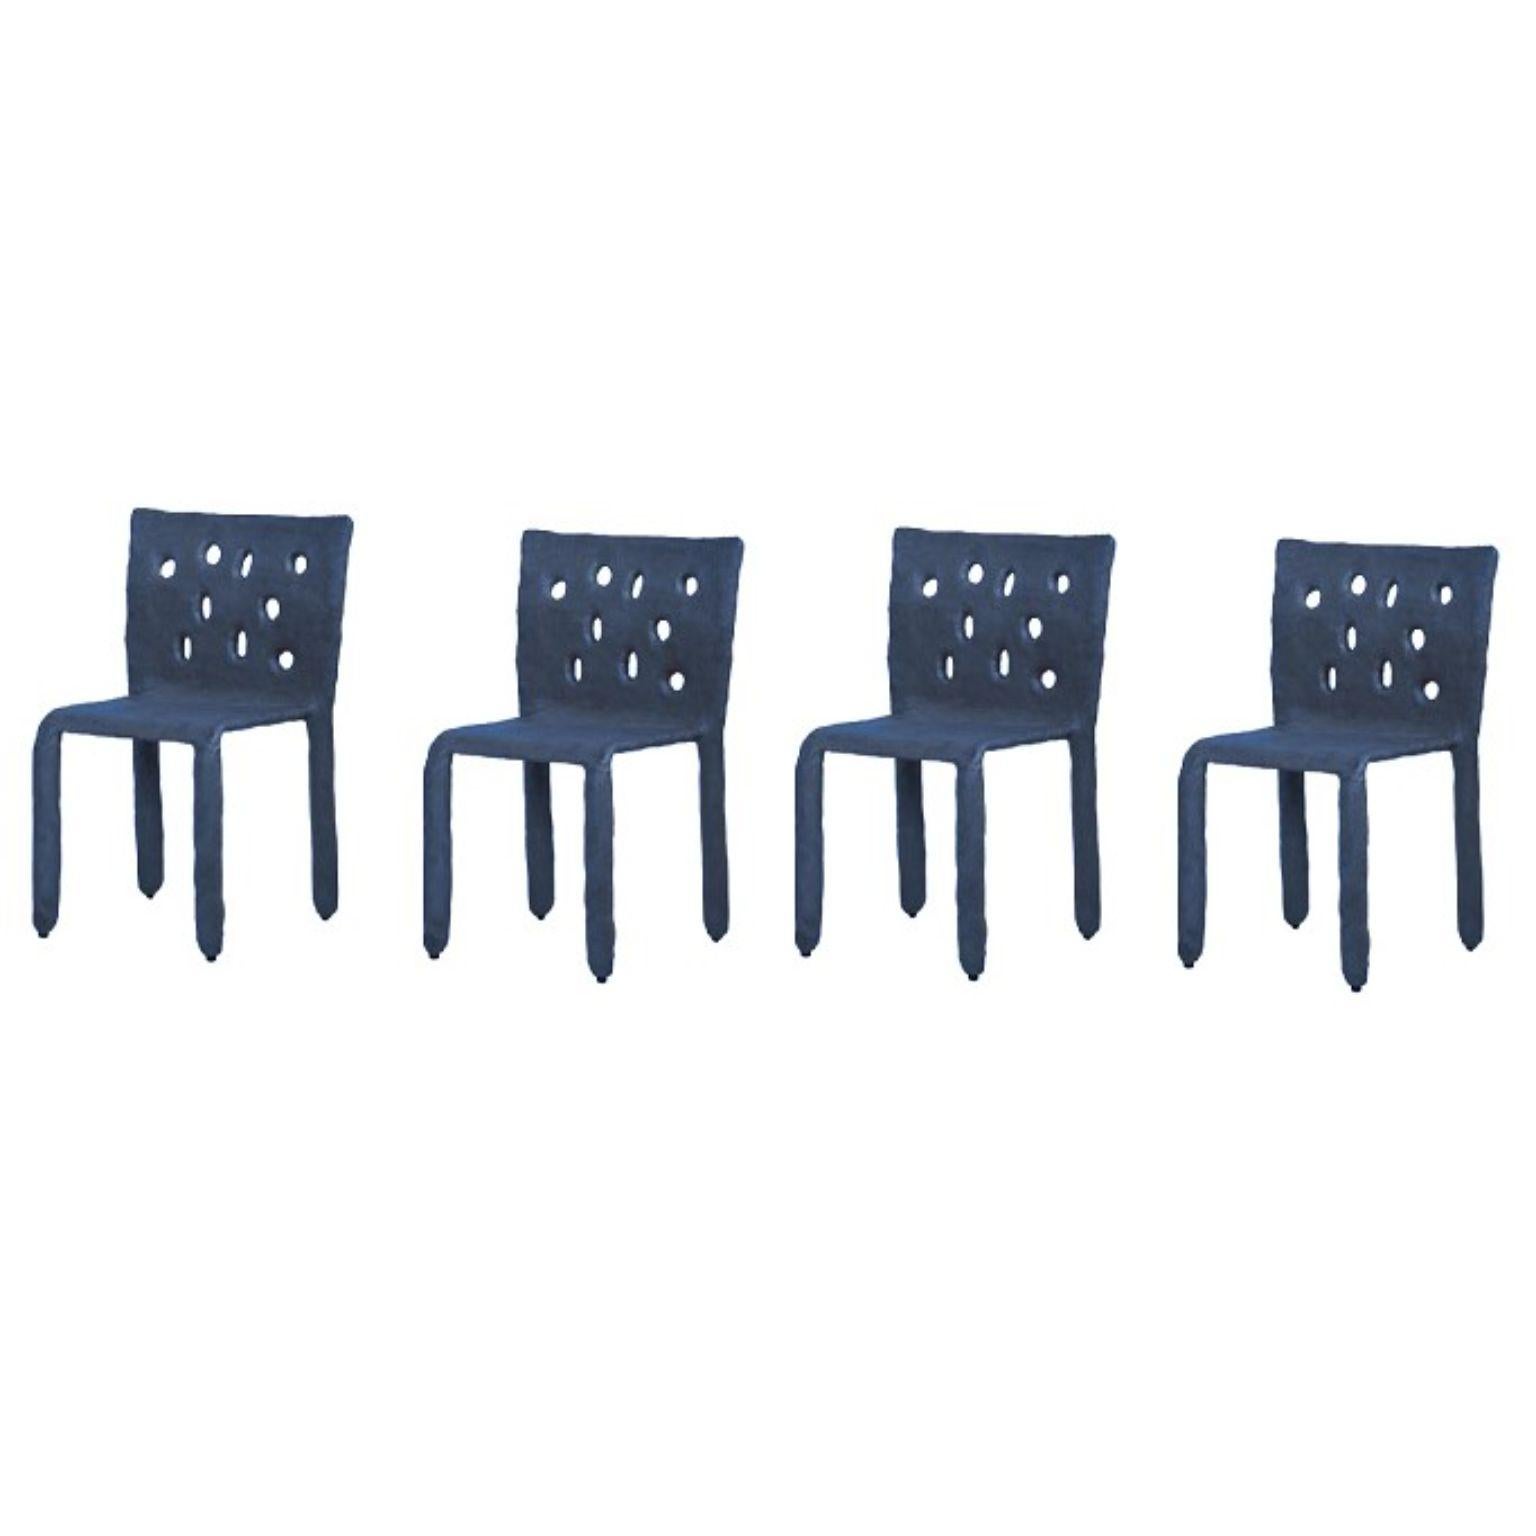 Ensemble de 4 chaises sculptées bleues de FAINA.
Design : Victoriya Yakusha
MATERIAL : acier, caoutchouc de lin, biopolymère, cellulose.
Dimensions : Hauteur 82 x largeur 54 x profondeur des pieds 45 cm
 Poids : 15 kilos.

Finition intérieure